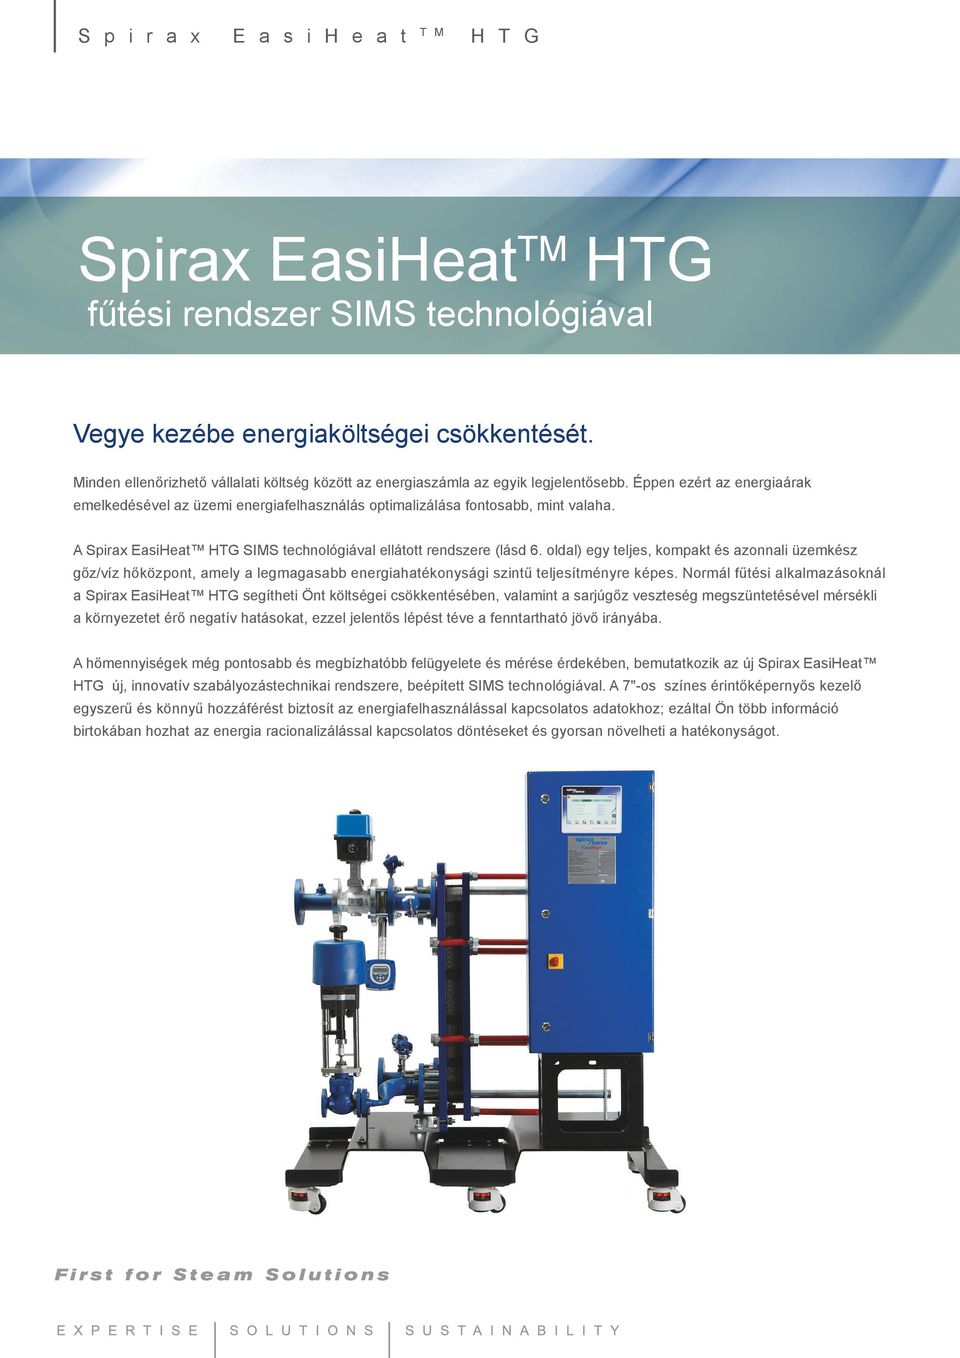 A Spirax EasiHeat HTG SIMS technológiával ellátott rendszere (lásd 6.